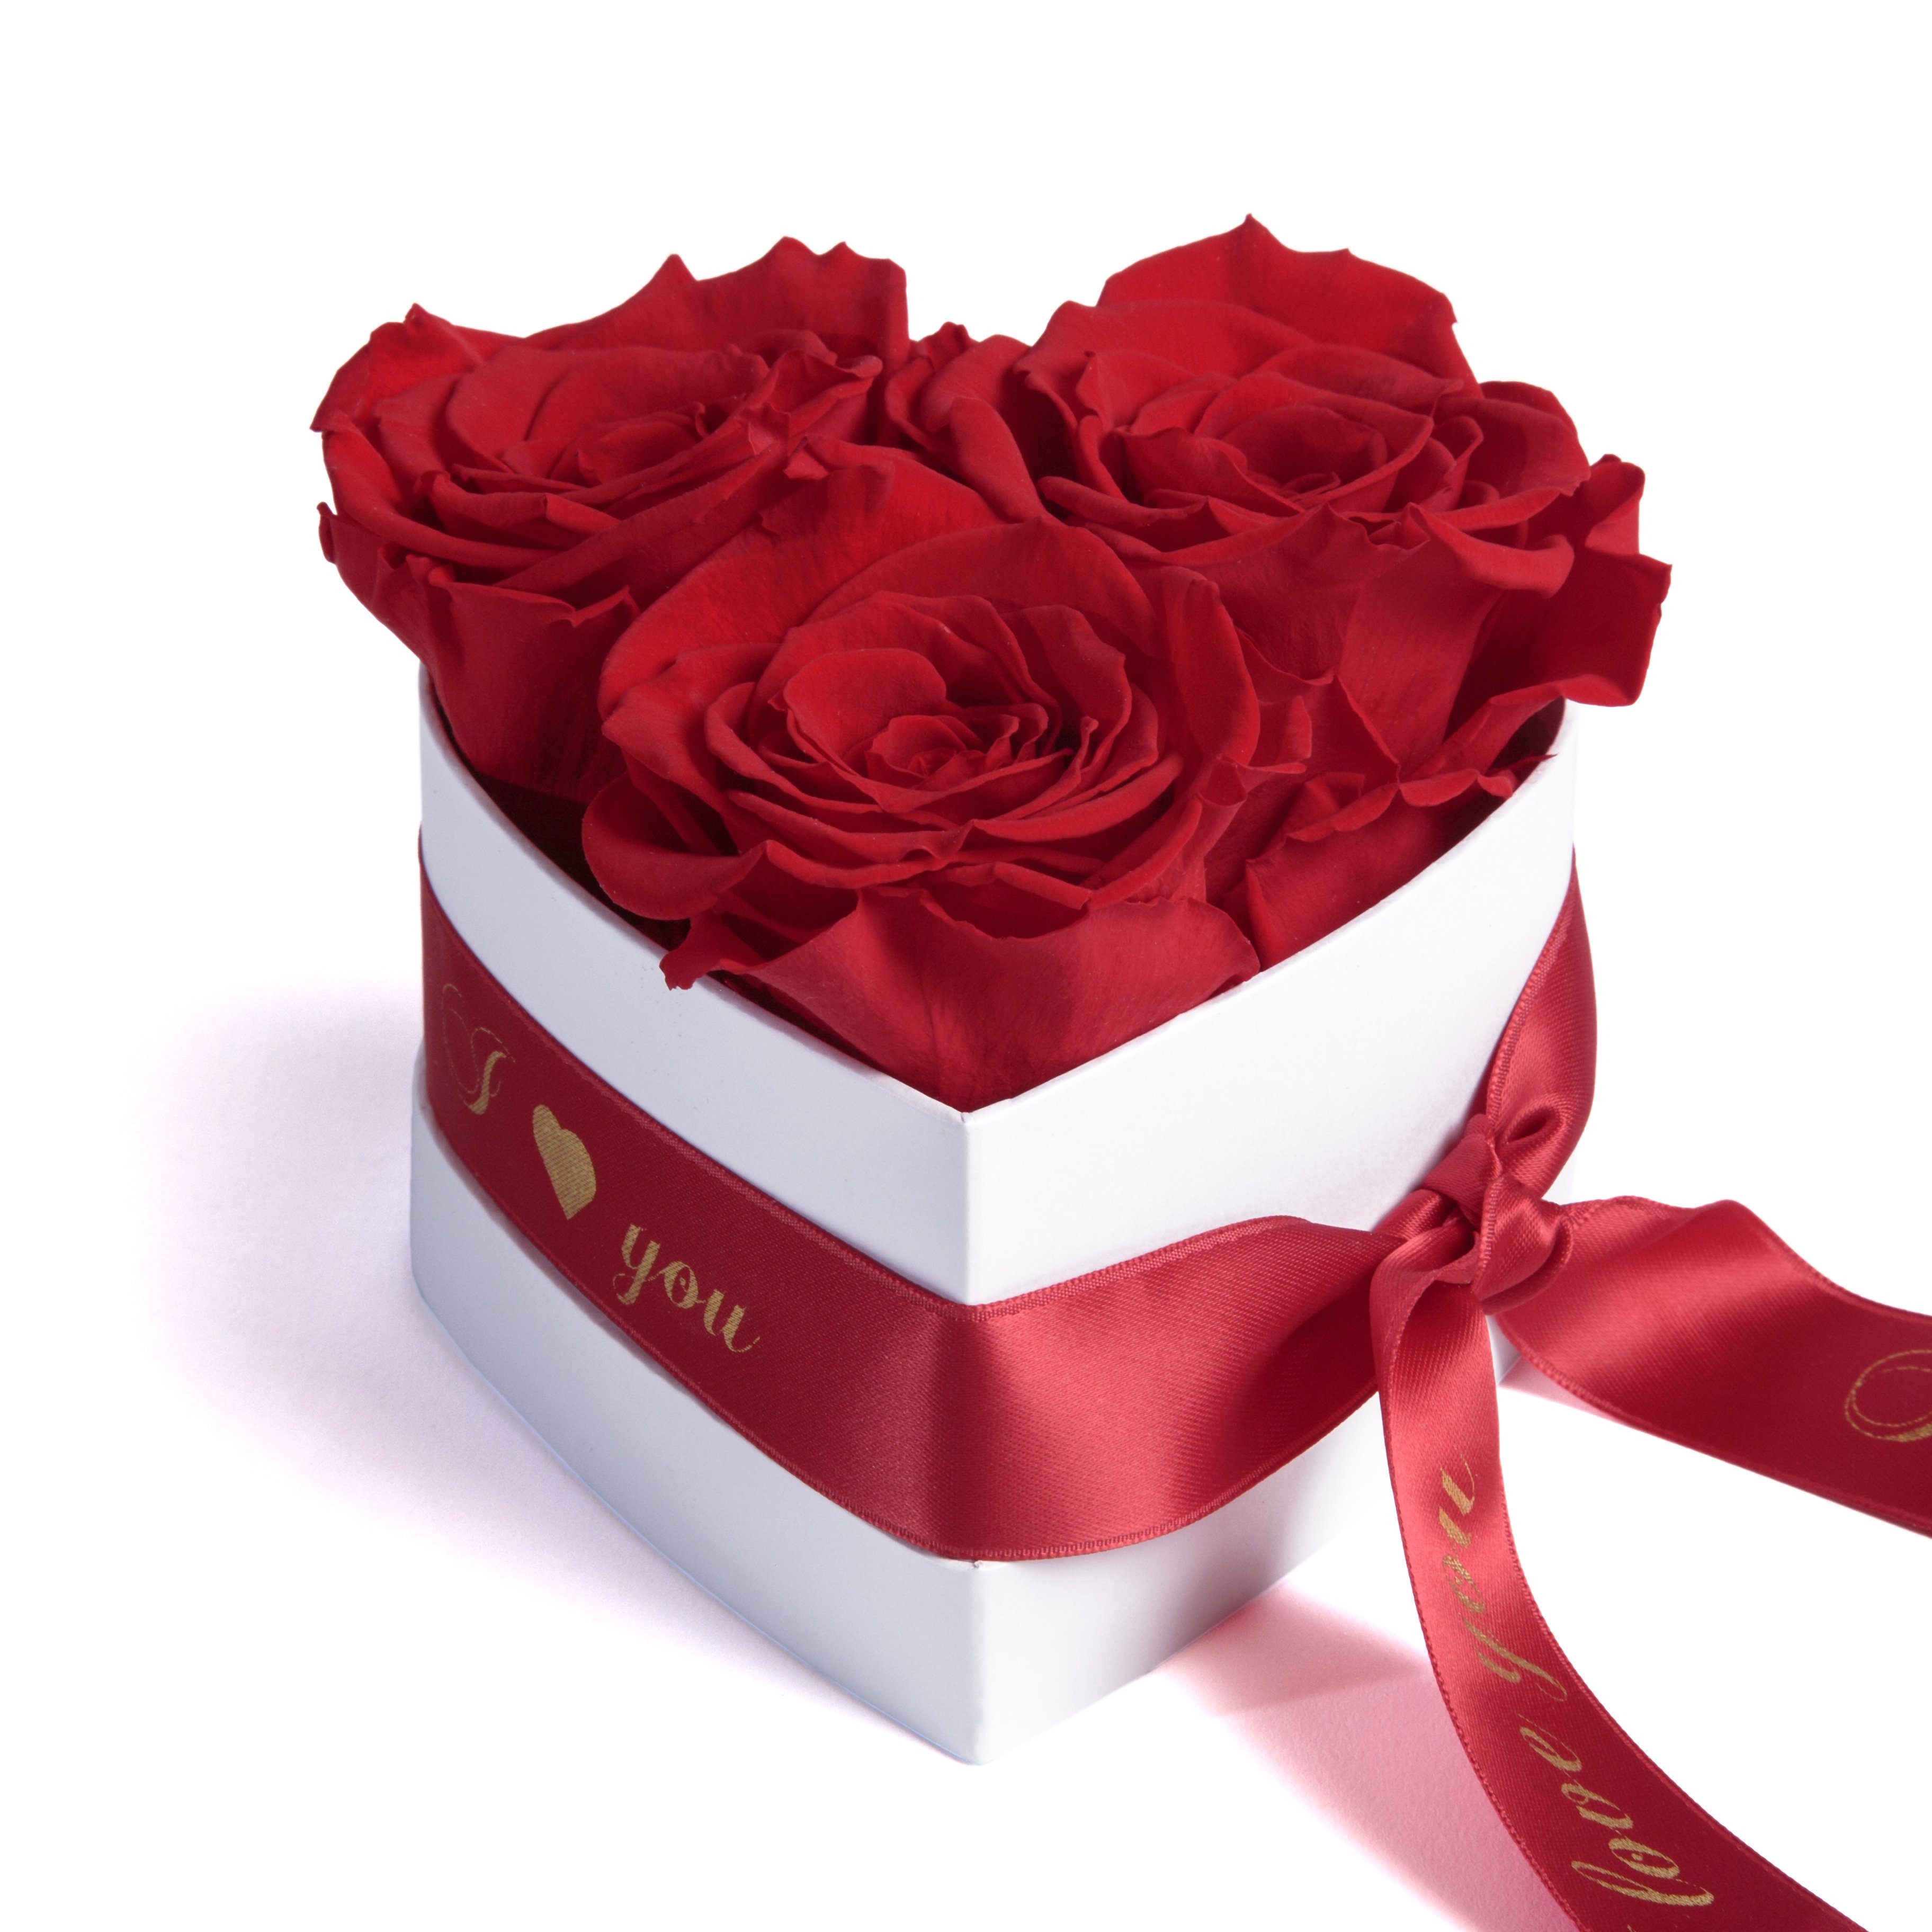 Kunstblume Rosenbox Herz 3 konservierte Infinity Rosen in Box I Love You Rose, ROSEMARIE SCHULZ Heidelberg, Höhe 8.5 cm, Valentinstag Geschenk für Sie Rot